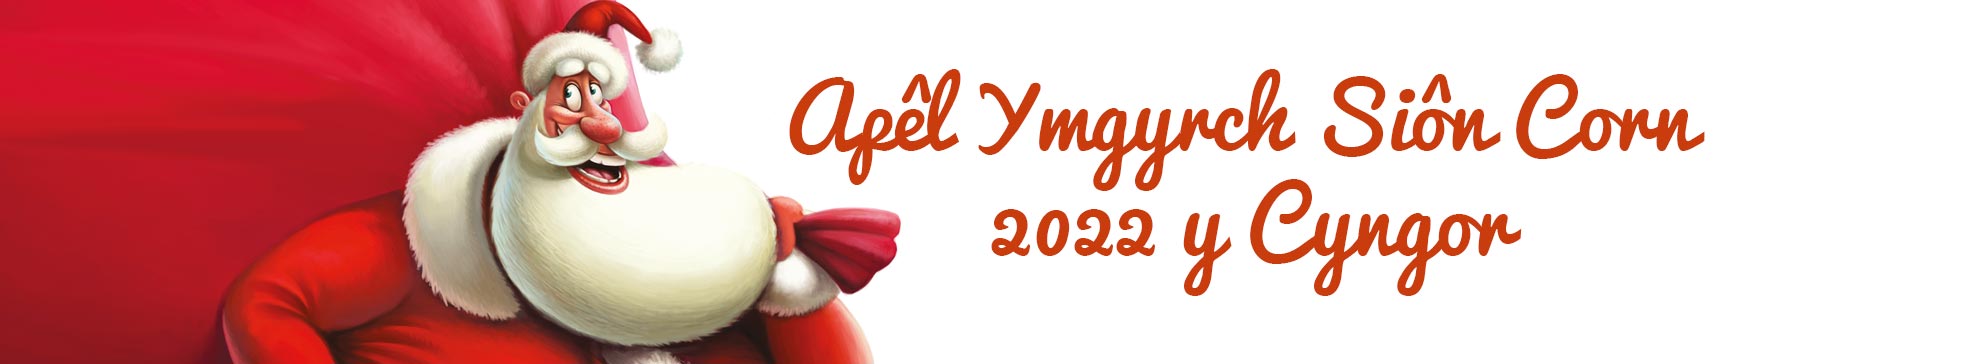 Apêl Ymgyrch Siôn Corn 2022 y Cyngor